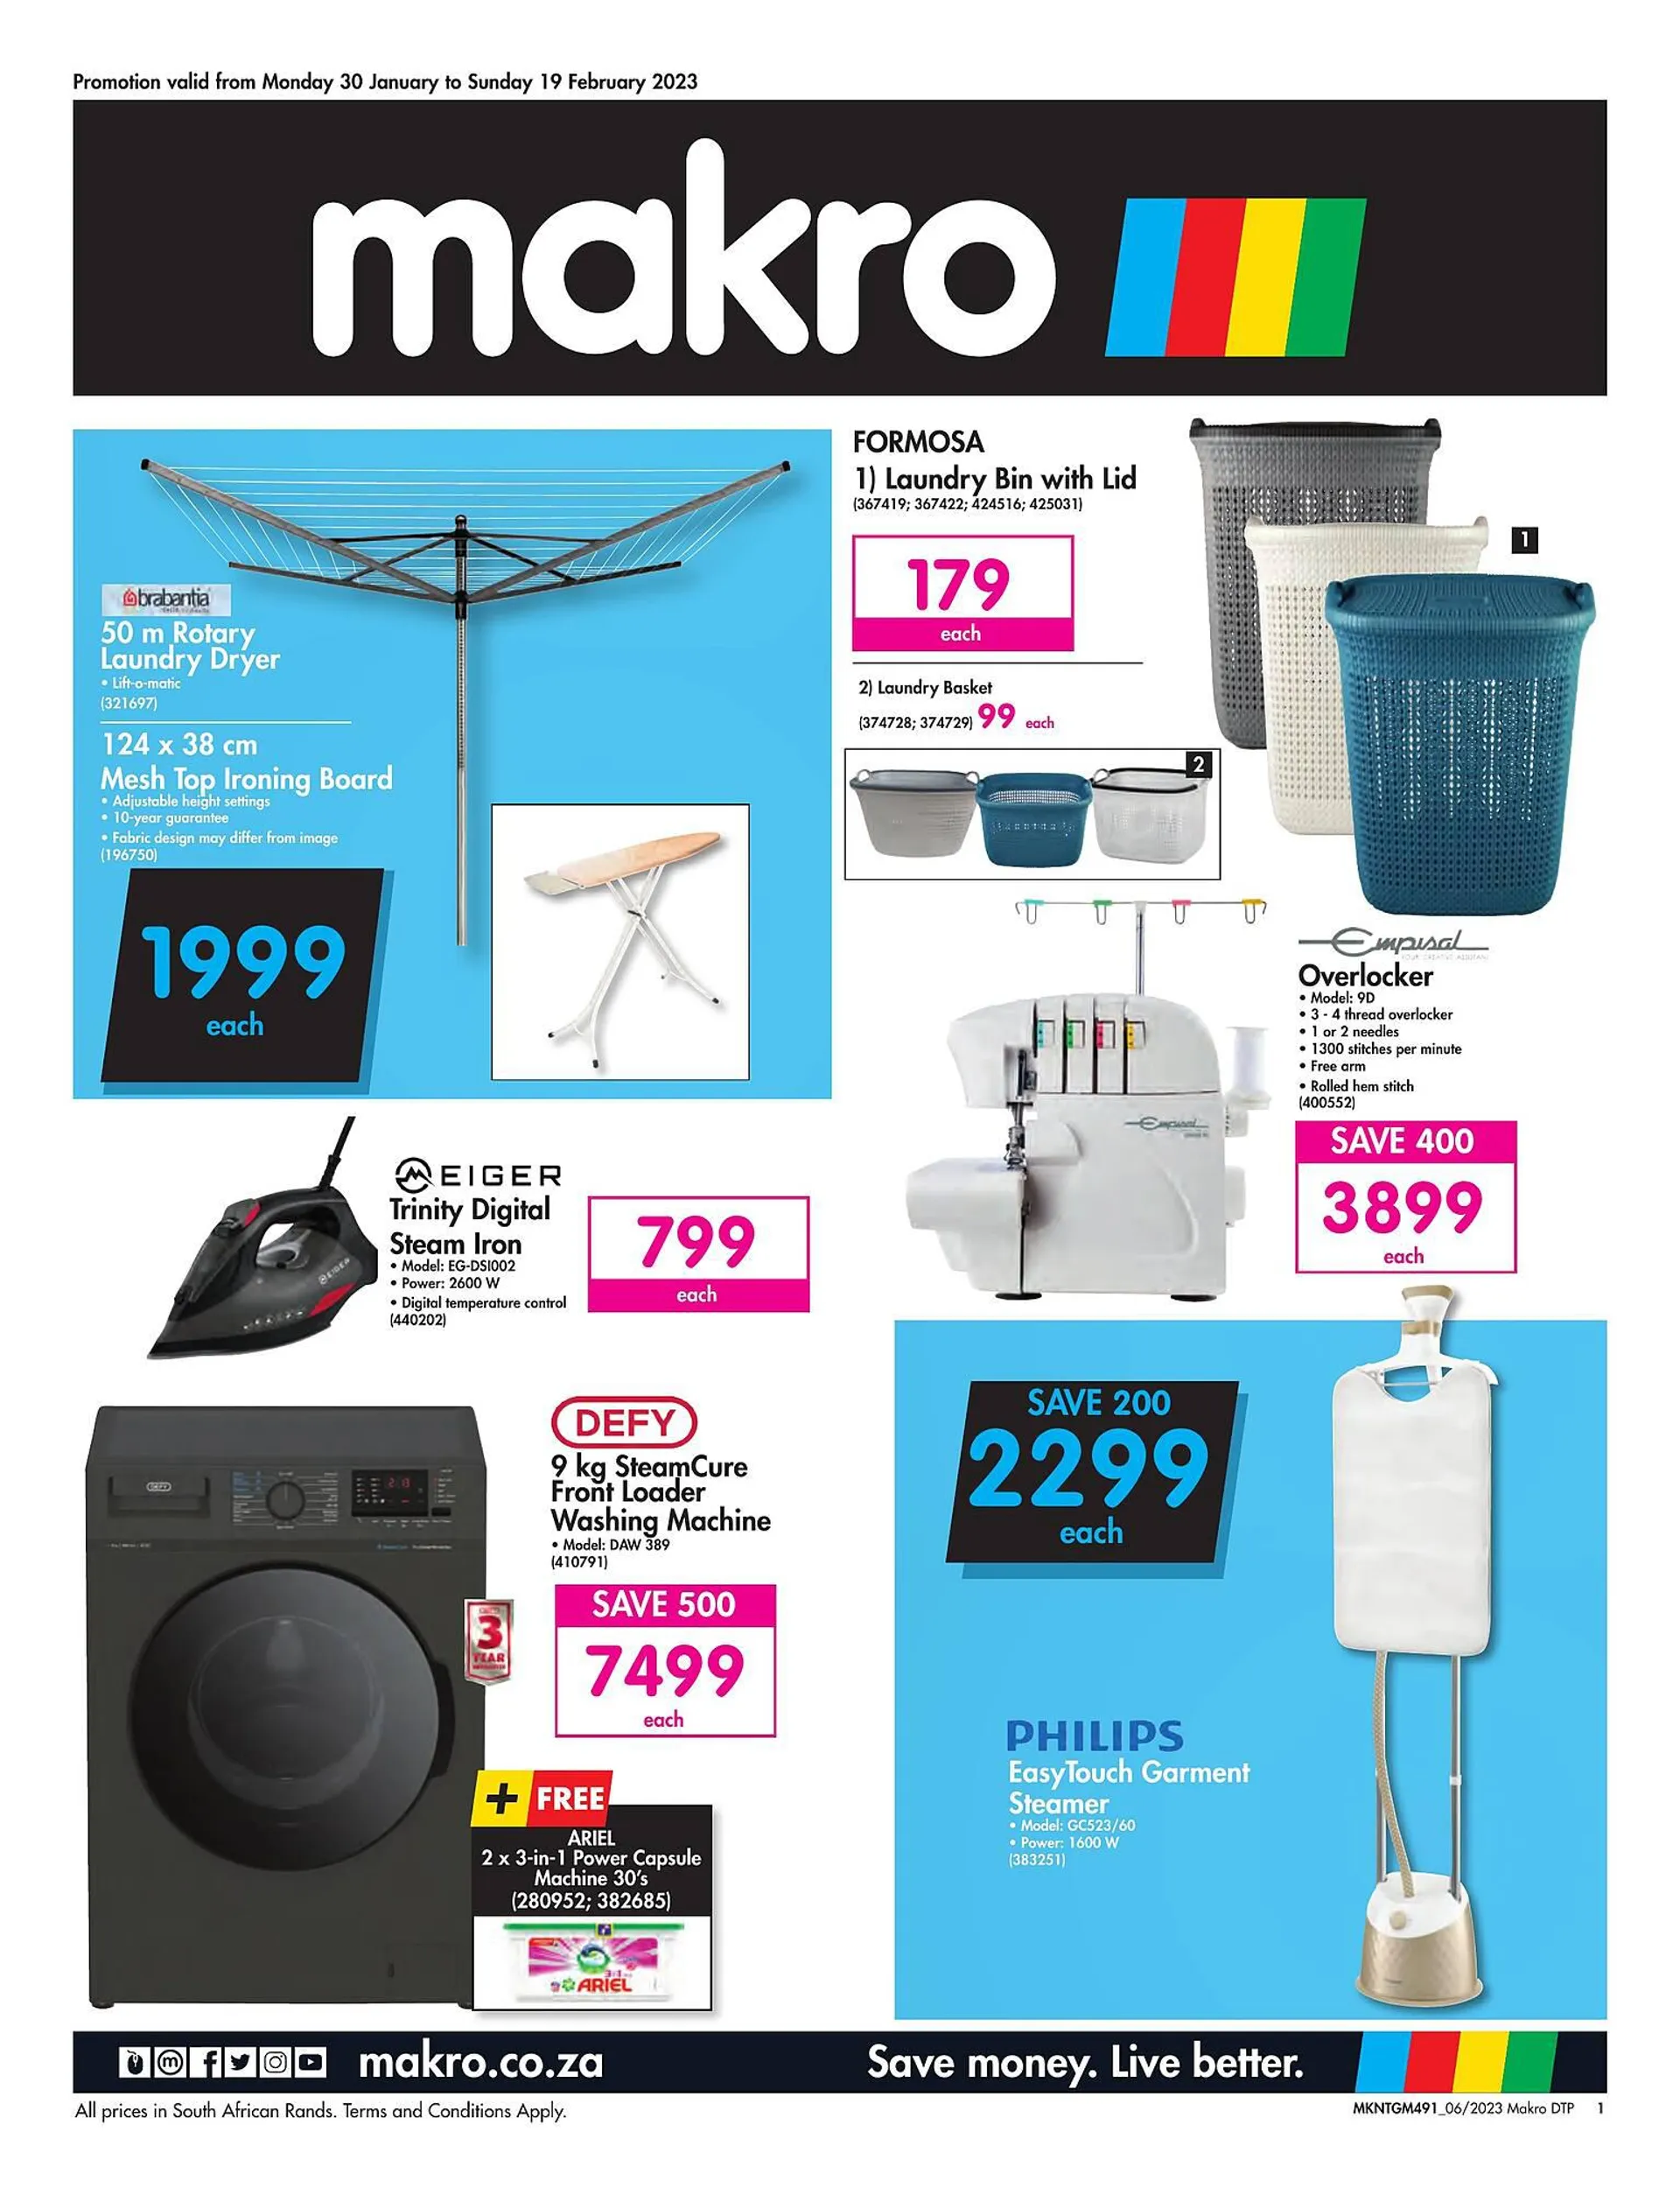 Makro catalogue - Laundry - 1